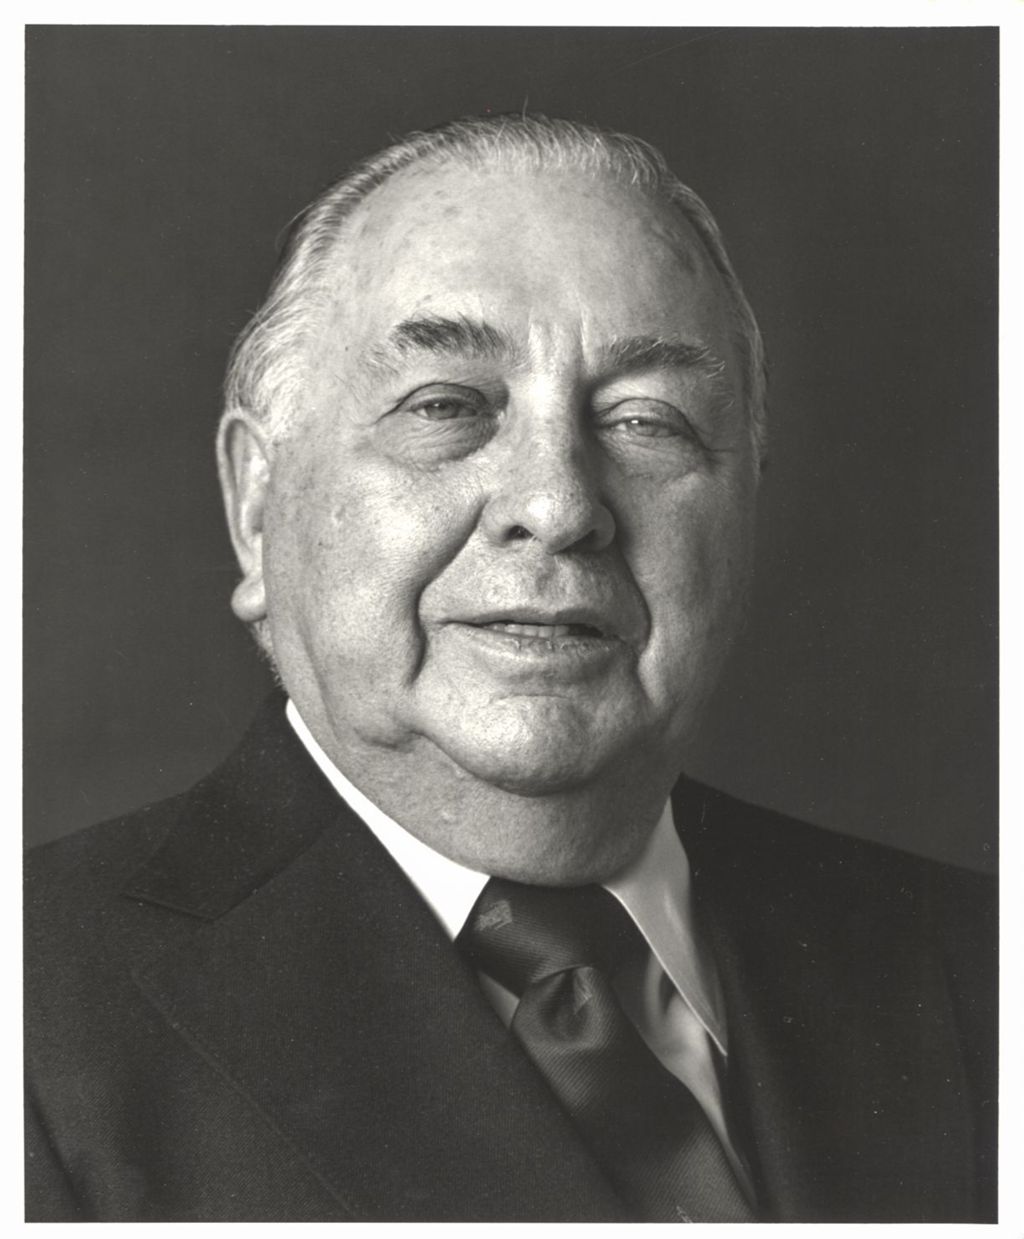 Portraits of Richard J. Daley